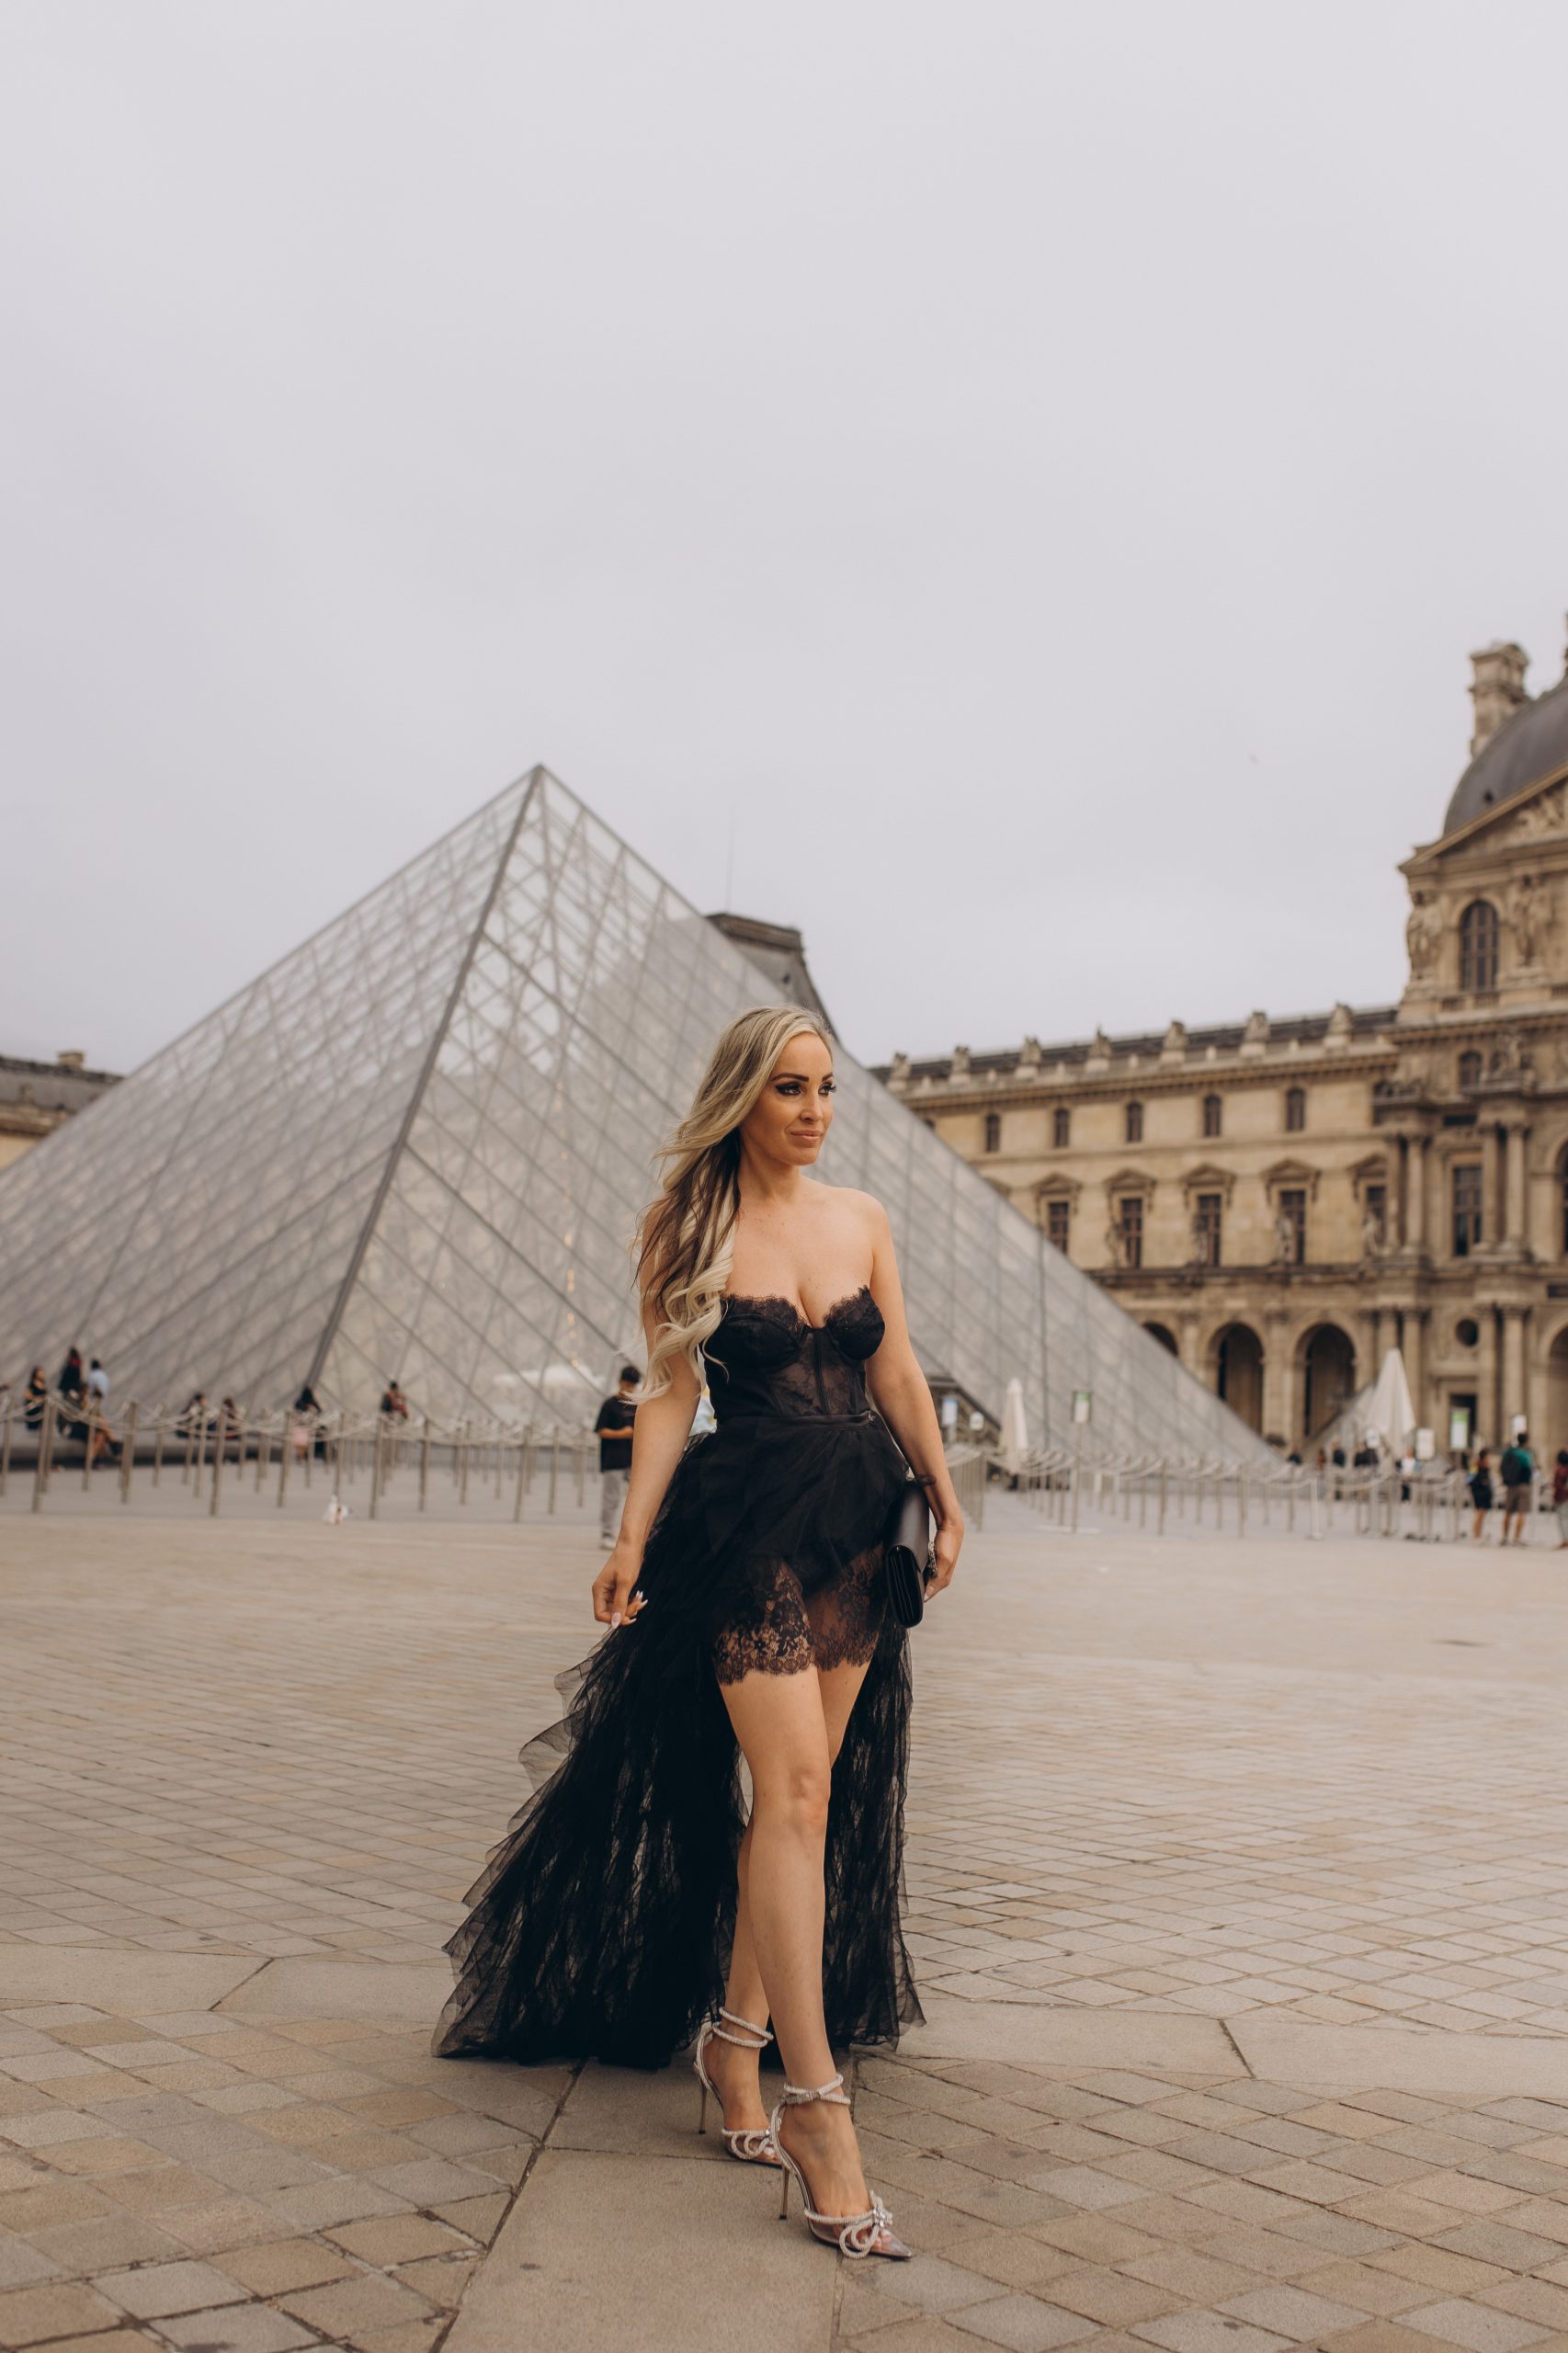 Paris photoshoot at Louvre and Arc De Triomphe